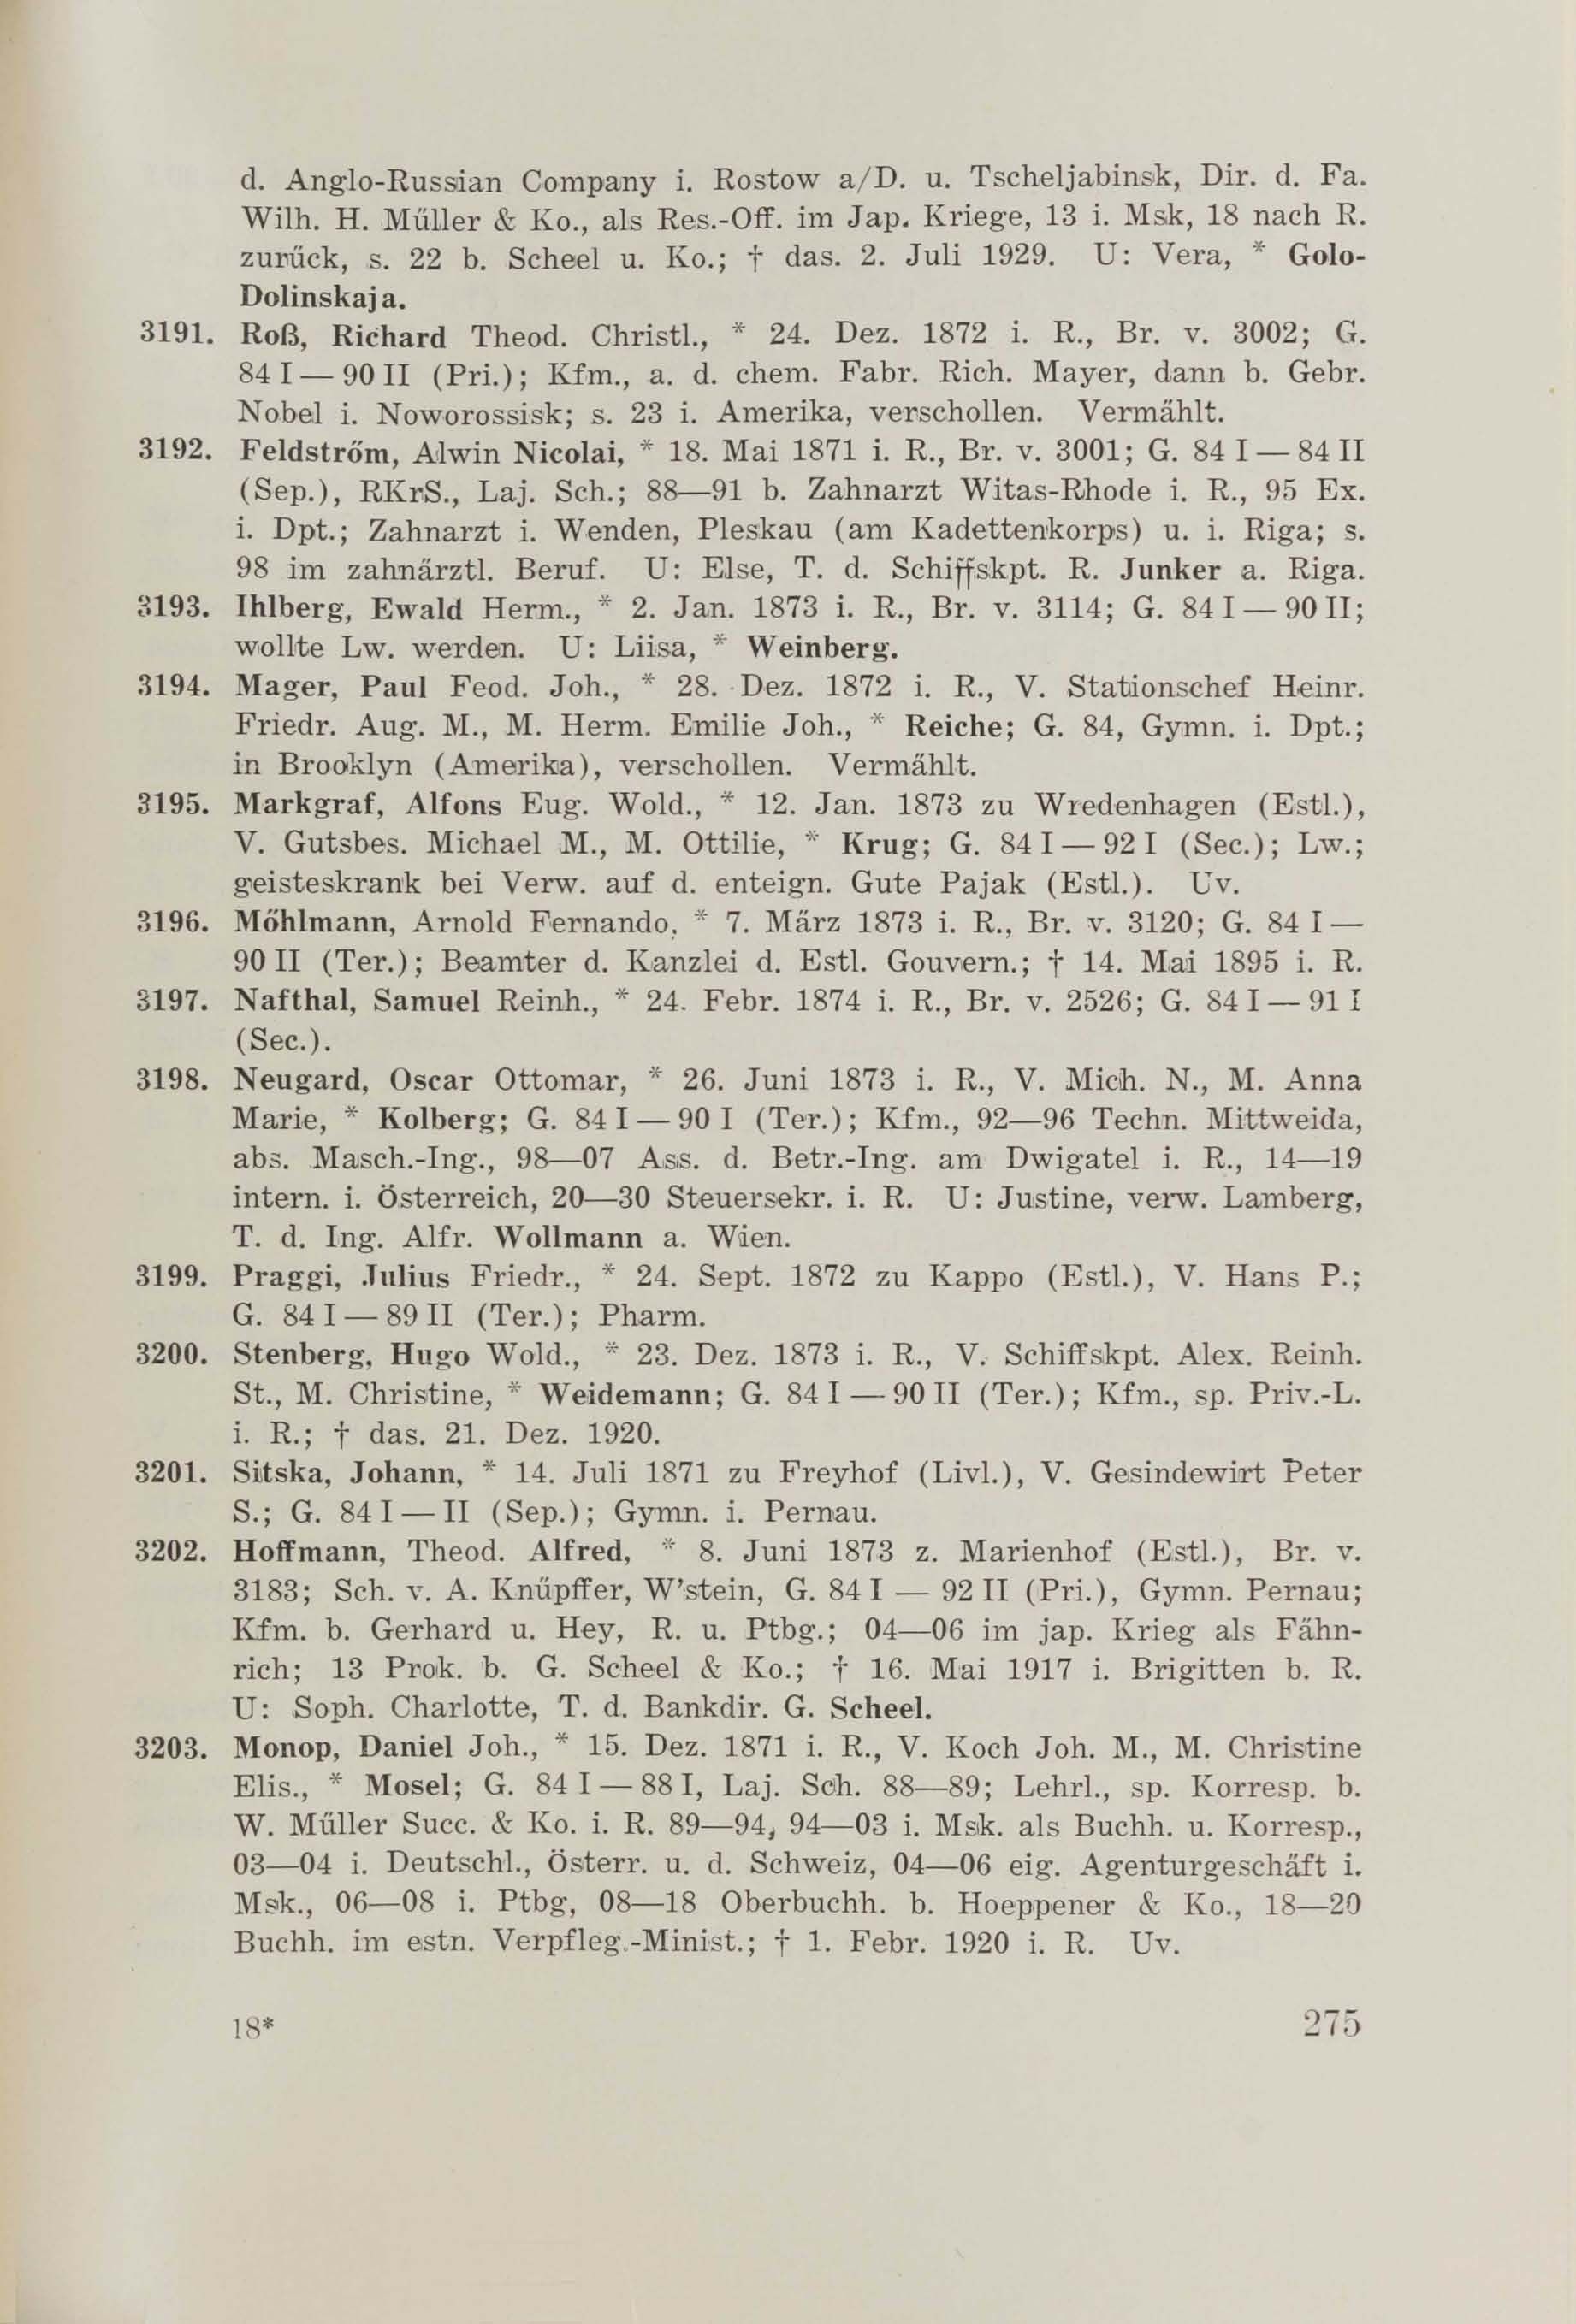 Schüler-Verzeichnis des Revalschen Gouvernements-Gymnasiums 1805–1890 (1931) | 285. (275) Main body of text